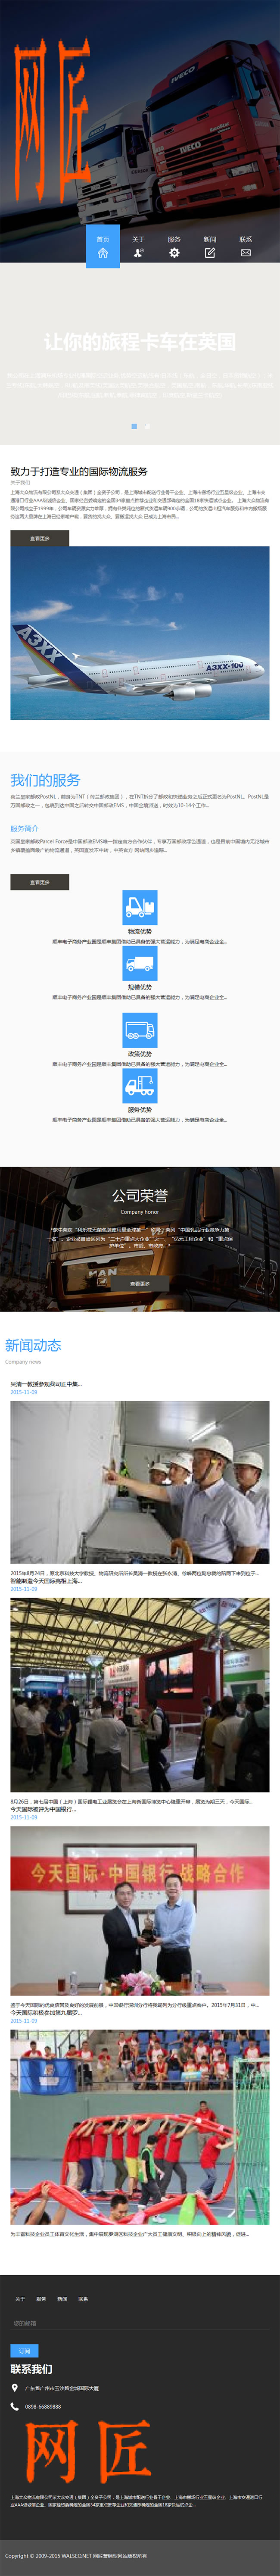 【首发】m-148HTML5自适应响应式国际货运物流公司网站织梦模板 v1.0